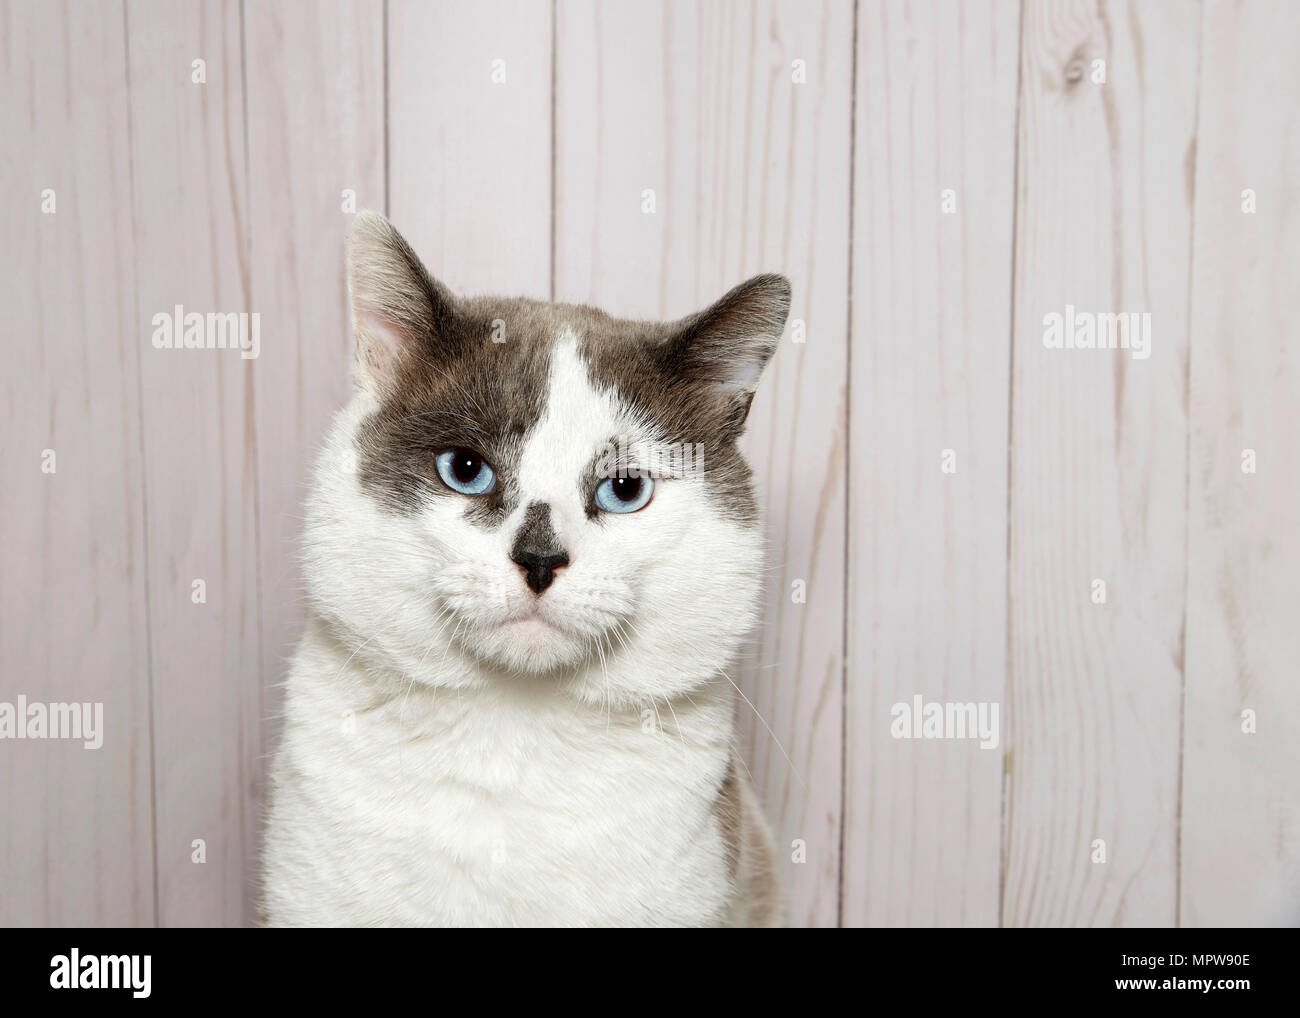 Portrait d'un chat blanc avec des taches grises sur la tête et le nez, yeux bleus à directement à l'afficheur. Panneau en bois clair wall background with copy space. Banque D'Images